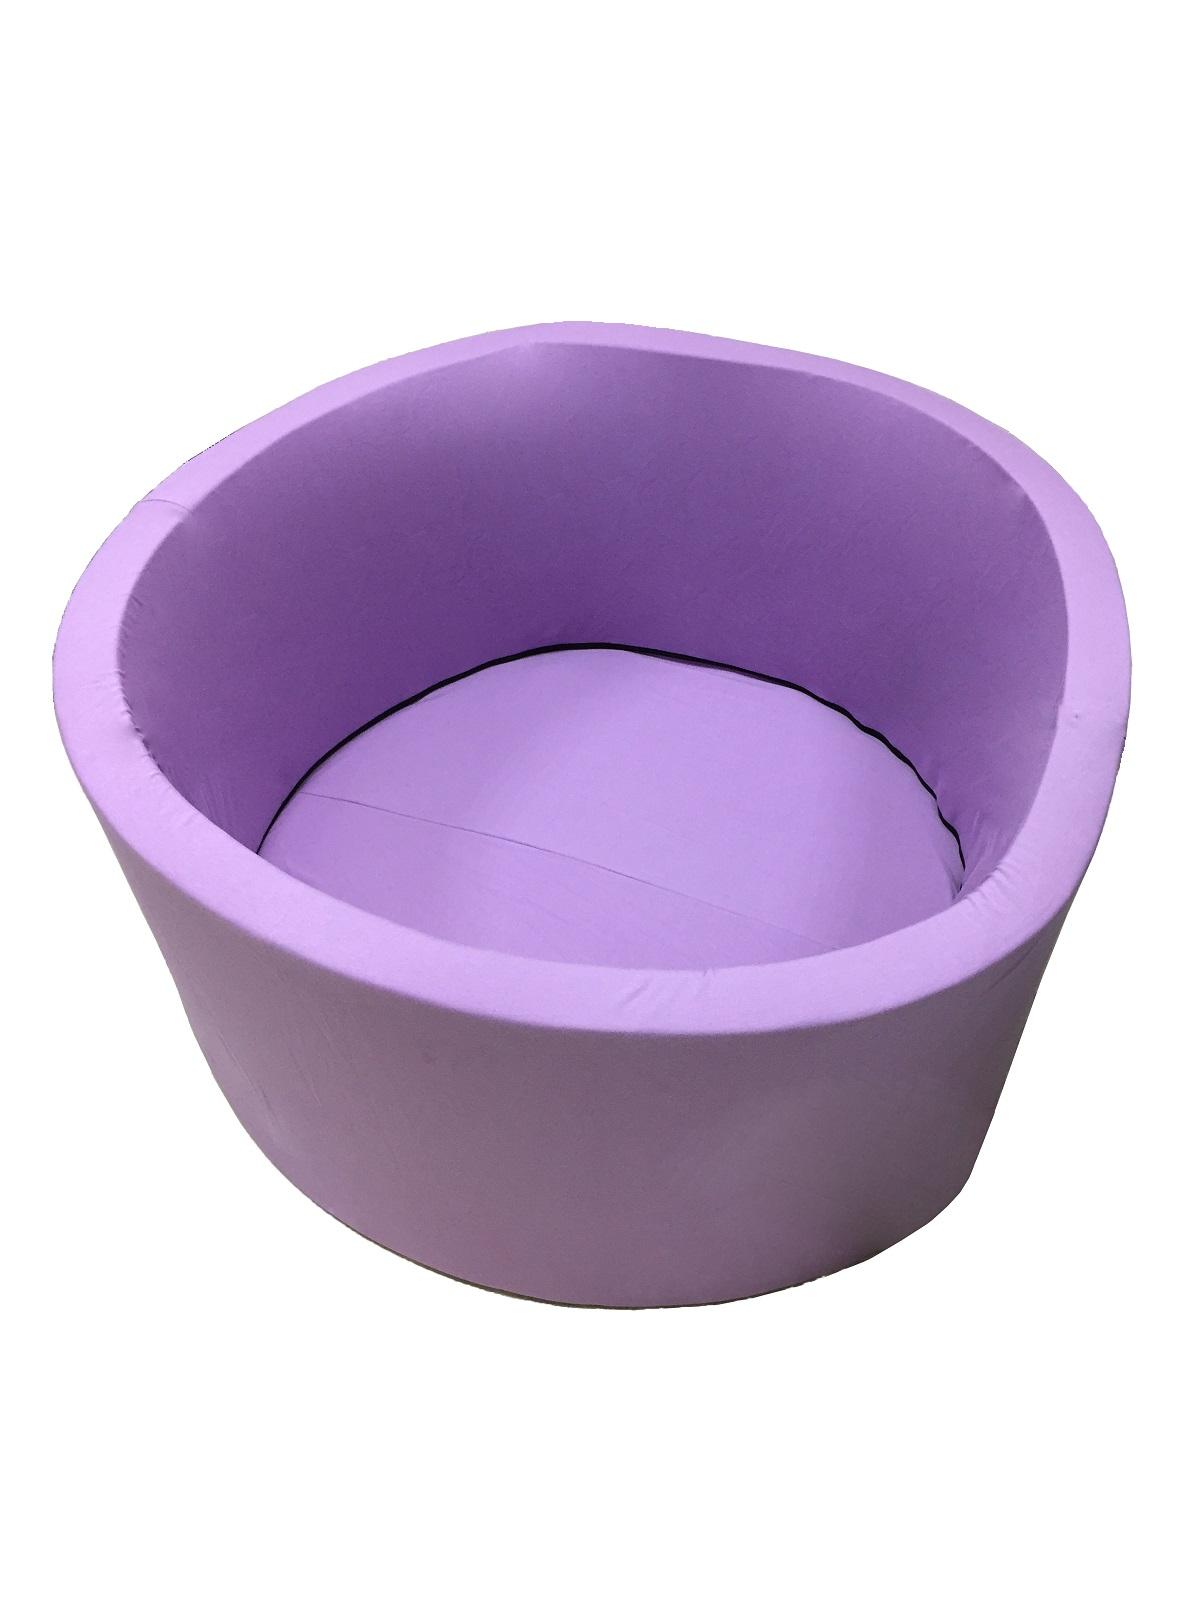 Изображение товара: Сухой игровой бассейн “Фиолетовый” выс. 40см. диам 1 м